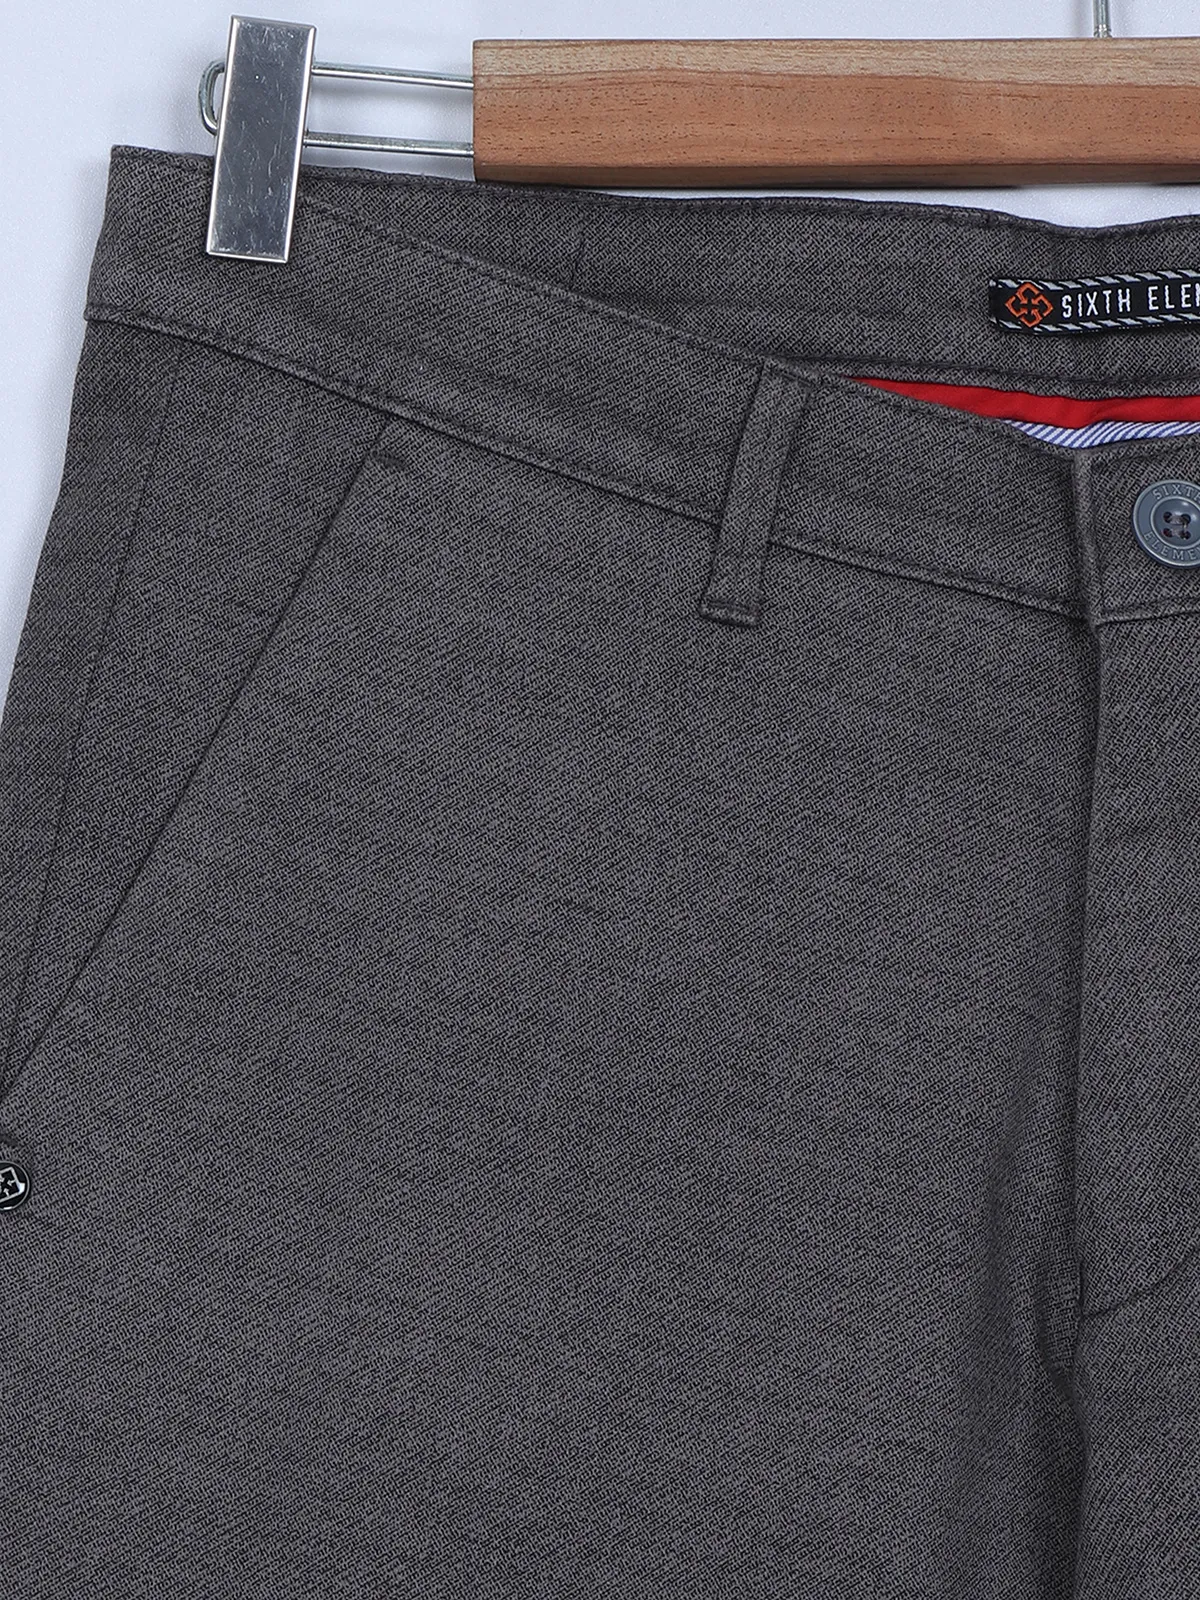 Sixth Element dark grey cotton trouser